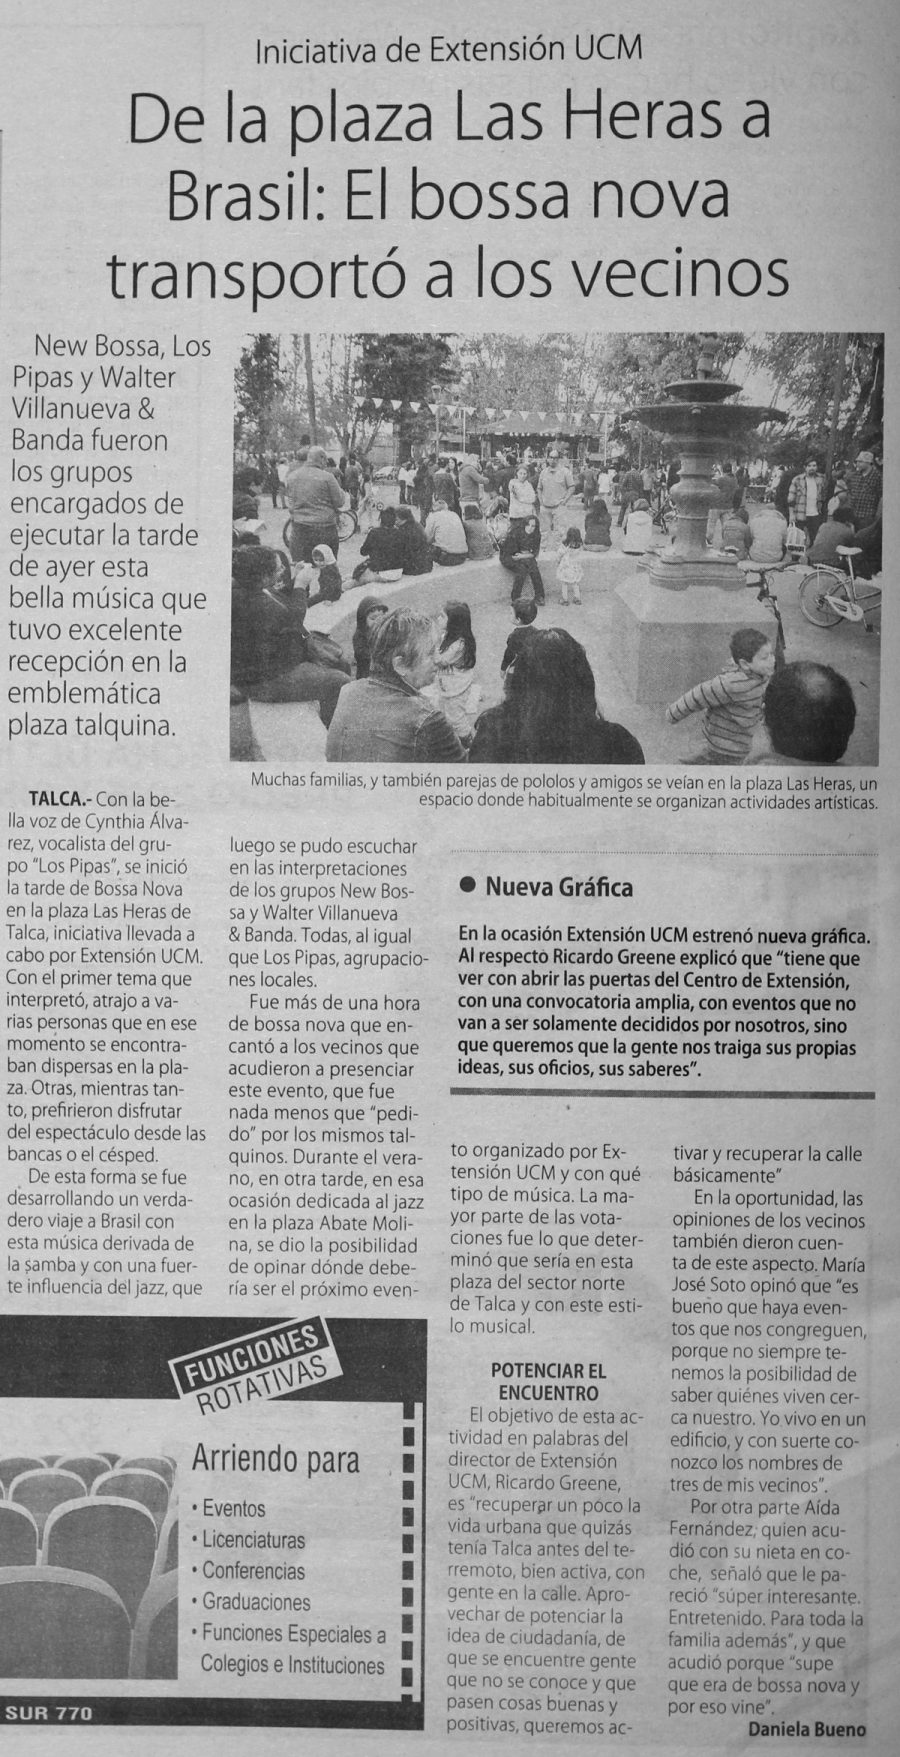 23 de abril en Diario El Centro: “De la plaza Las Heras a Brasil: El bossa nova transportó a los vecinos”